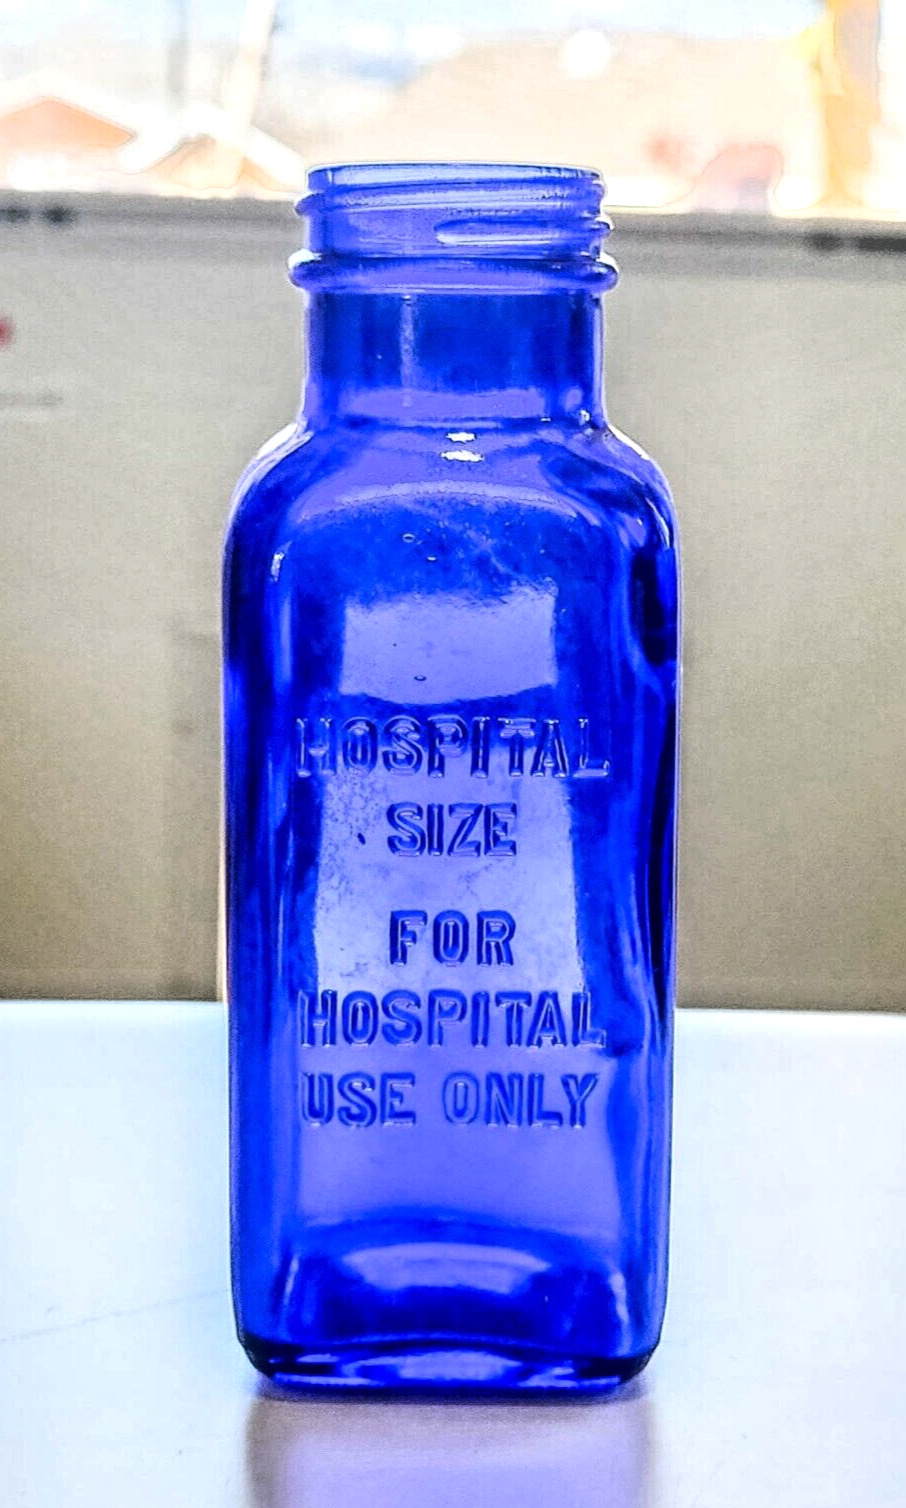 Vintage Cobalt Blue Medicine Bottle Embossed HOSPITAL SIZE FOR HOSPITAL USE ONLY